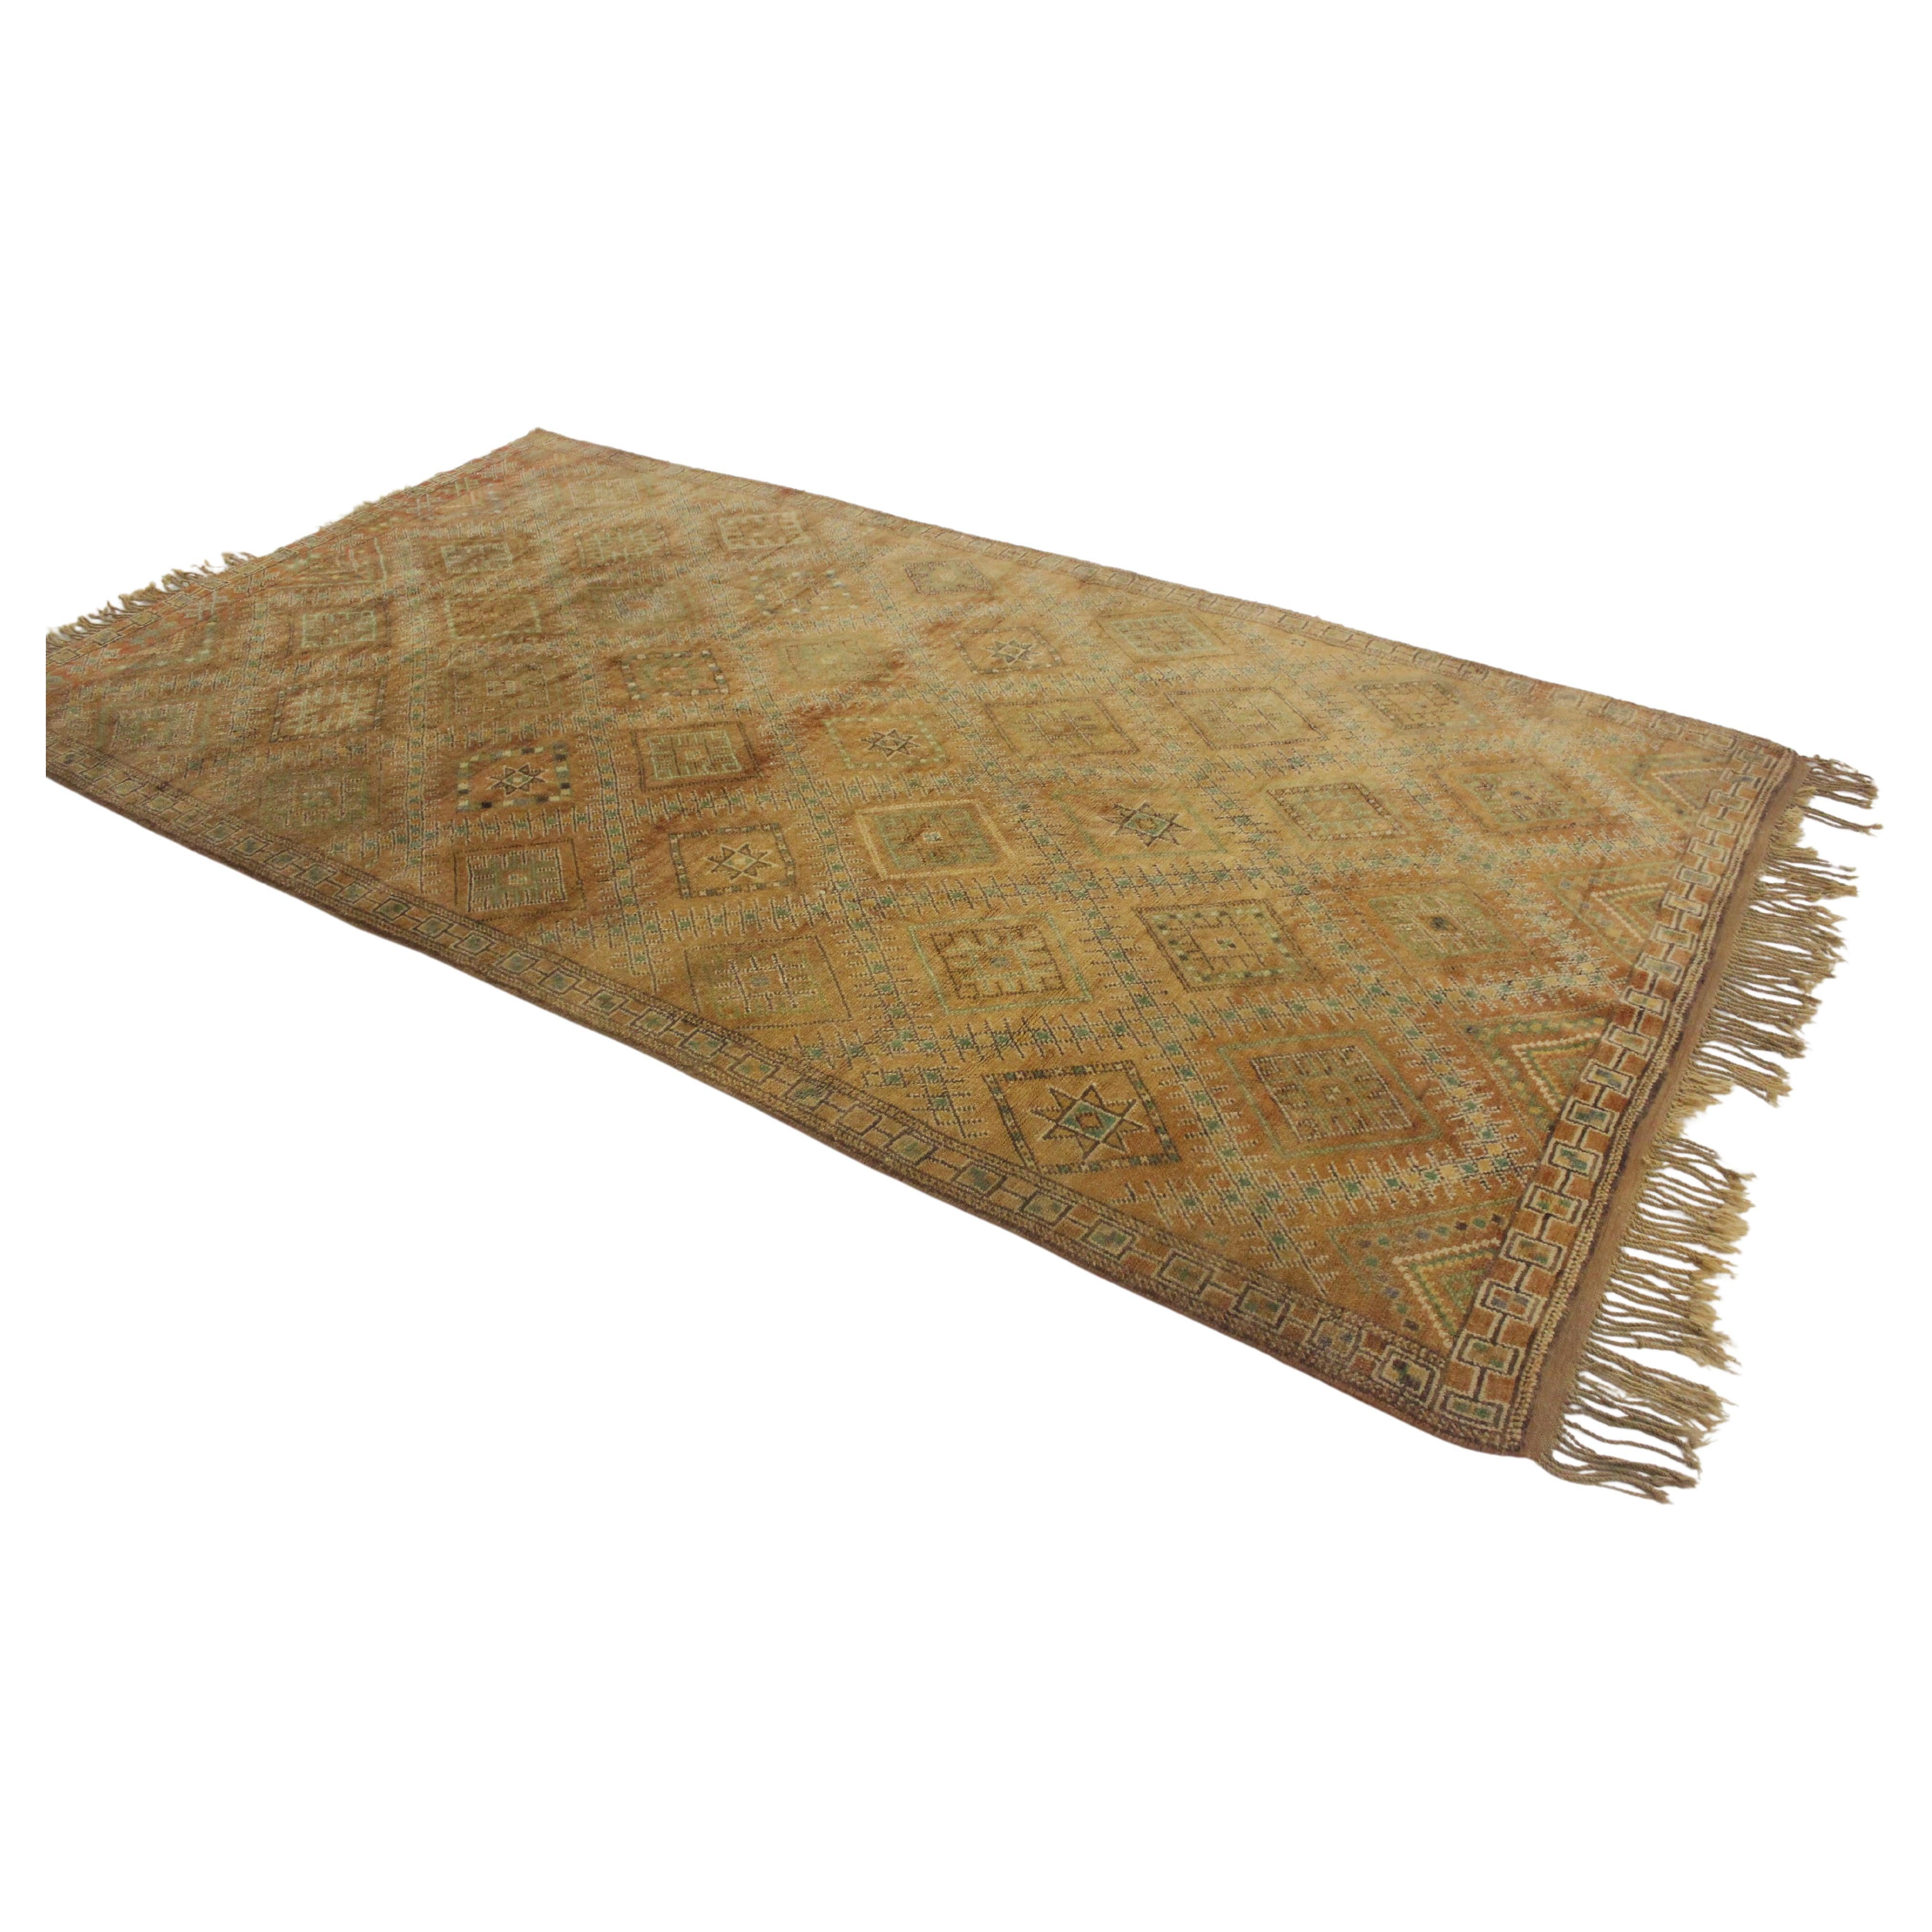 Ich habe diesen schönen Zemmour-Teppich aus einem Stapel von Teppichen ausgewählt, weil er eine Mischung aus Ockertönen und Smaragdgrün ist. Mit einem Hauch von Sahnehäubchen. Dieser traditionelle Teppich zeigt ein klassisches Rautenmuster mit